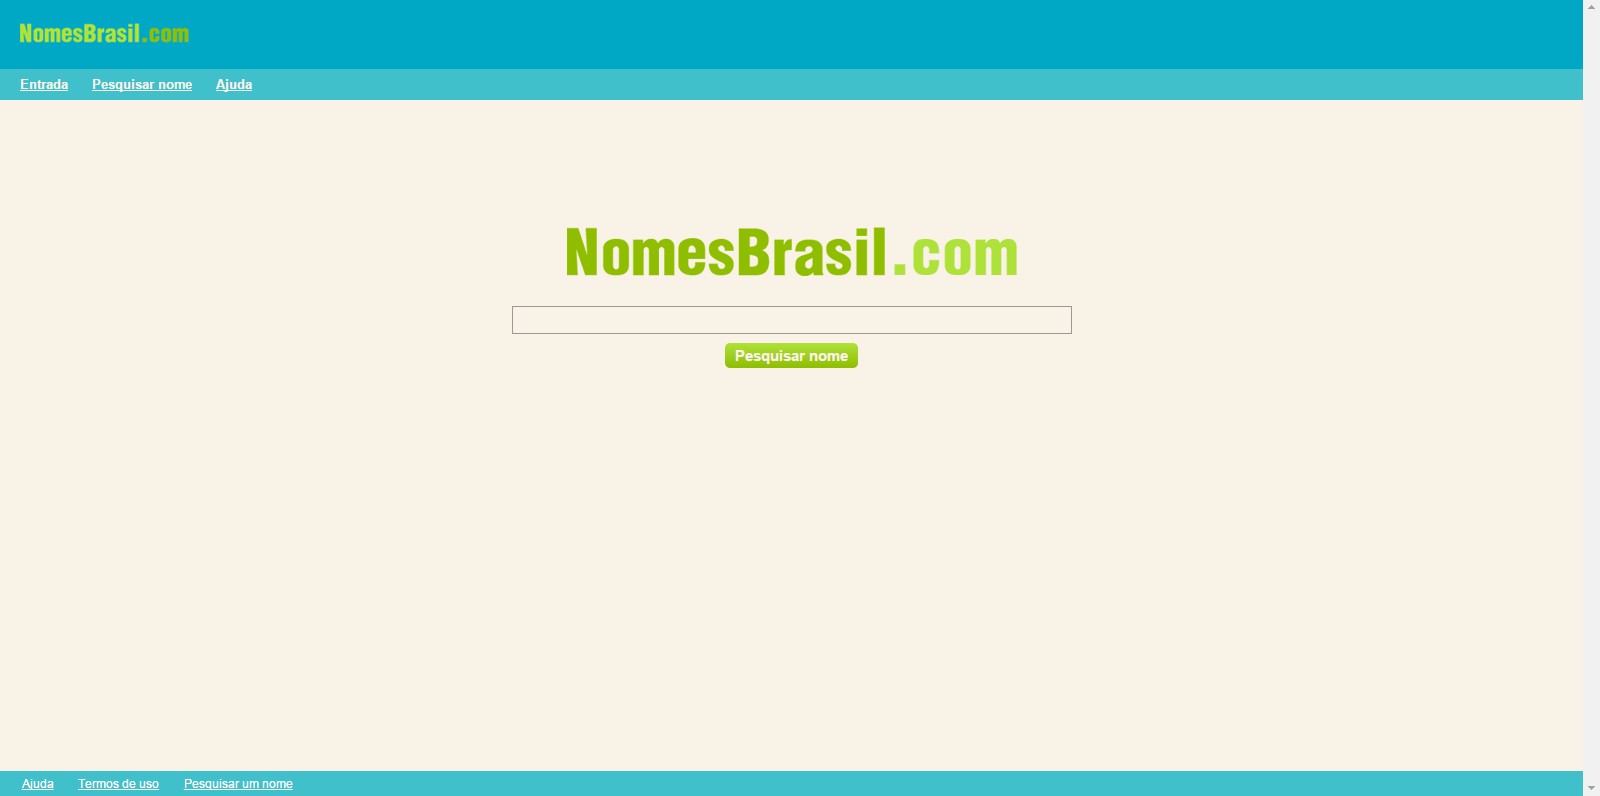 NomesBrasil.com tem irritado muitos brasileiros (Foto: Reprodução)